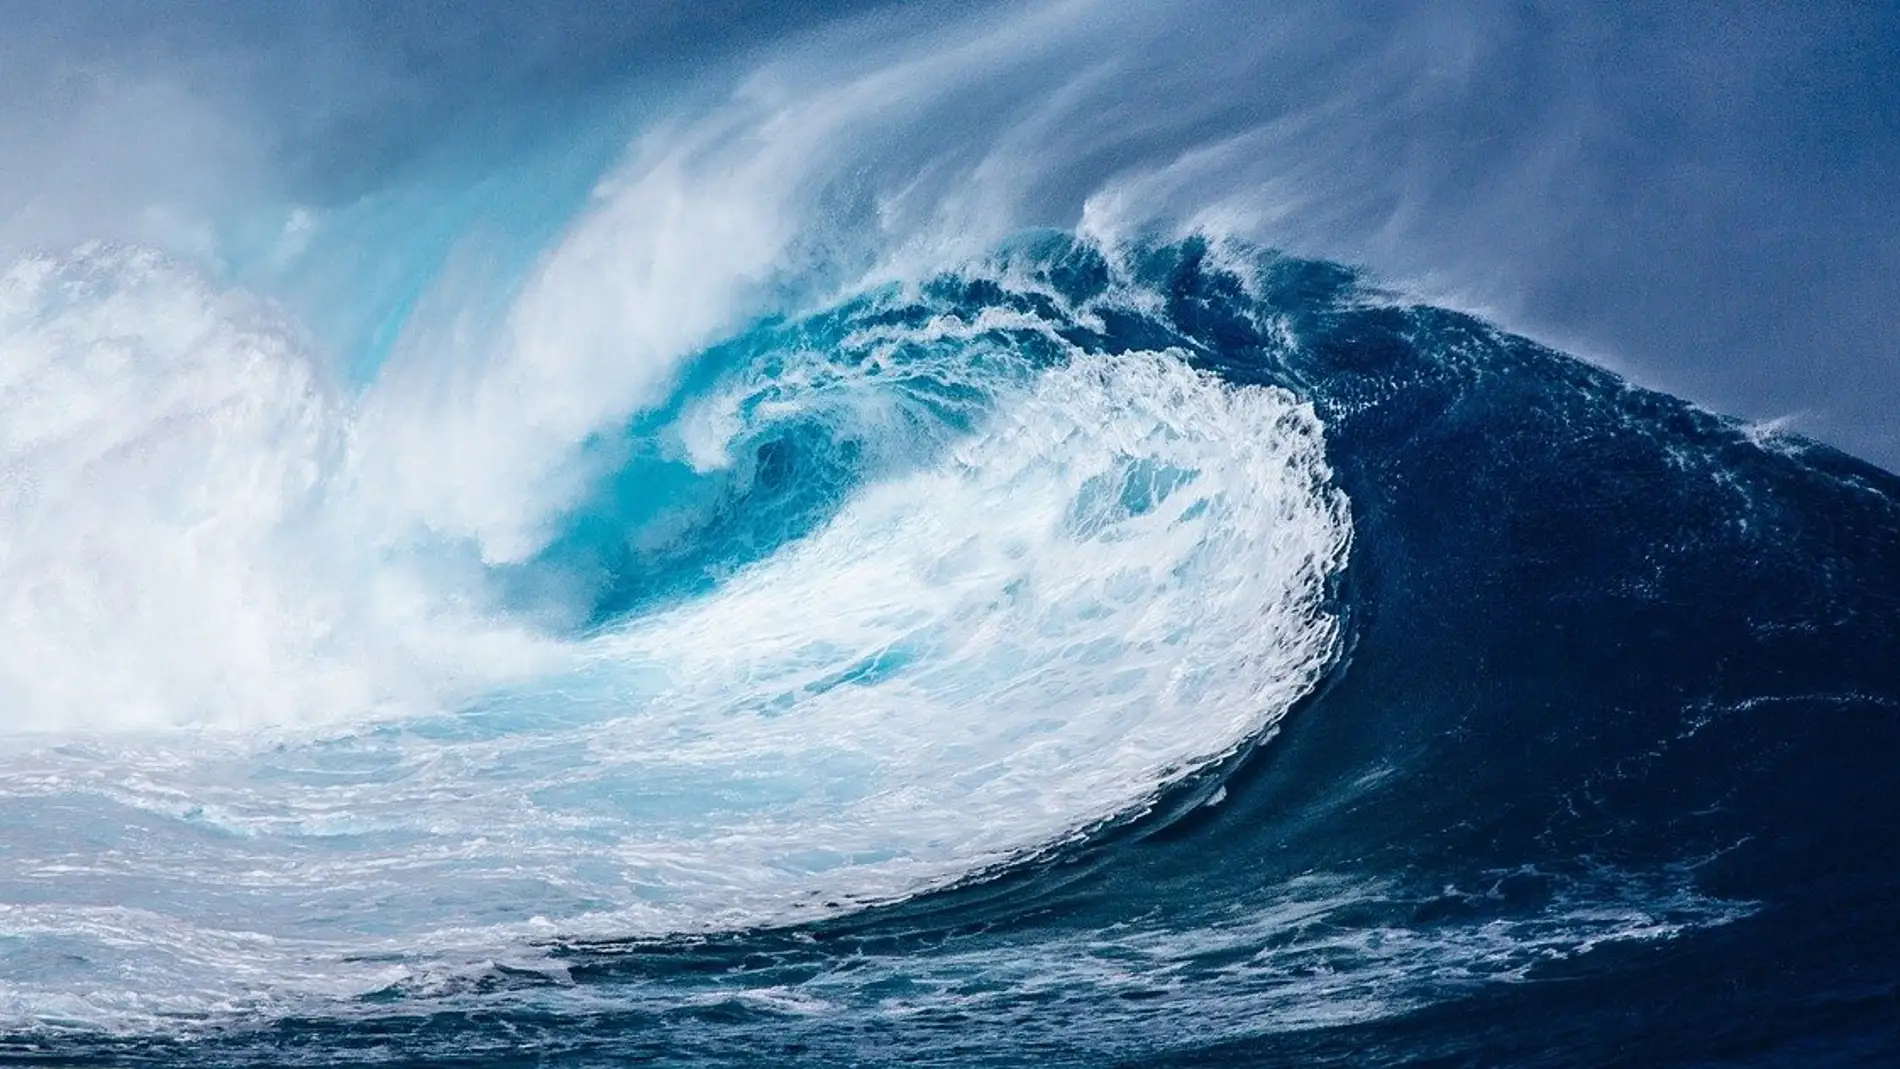 Advierten de que el Mediterráneo puede sufrir un tsunami "catastrófico" con probabilidades "muy altas"